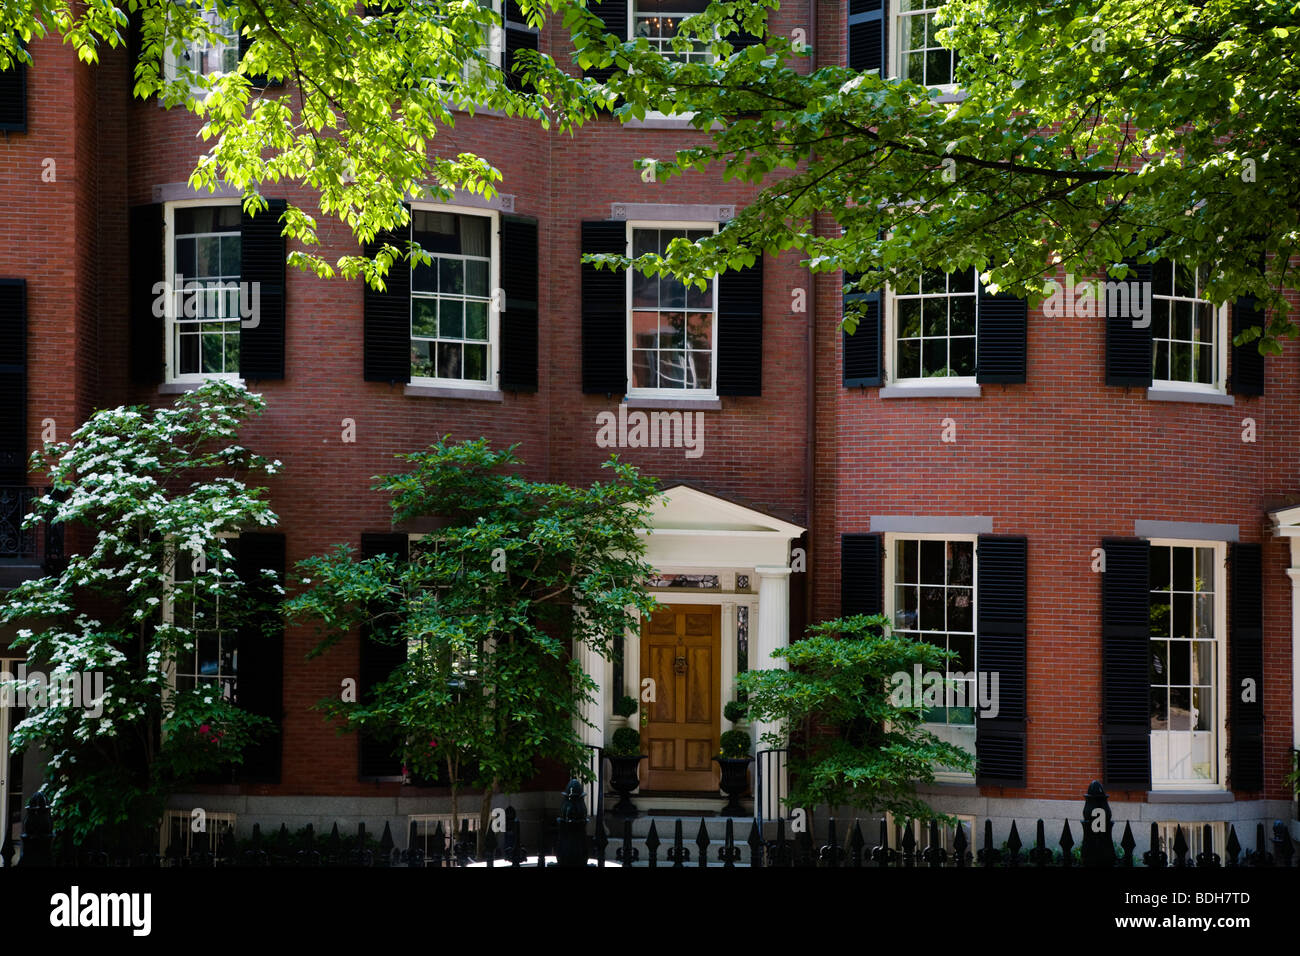 Maisons de brique classique des riches grace Louisburg Square sur BEACON HILL - BOSTON (MASSACHUSETTS) Banque D'Images